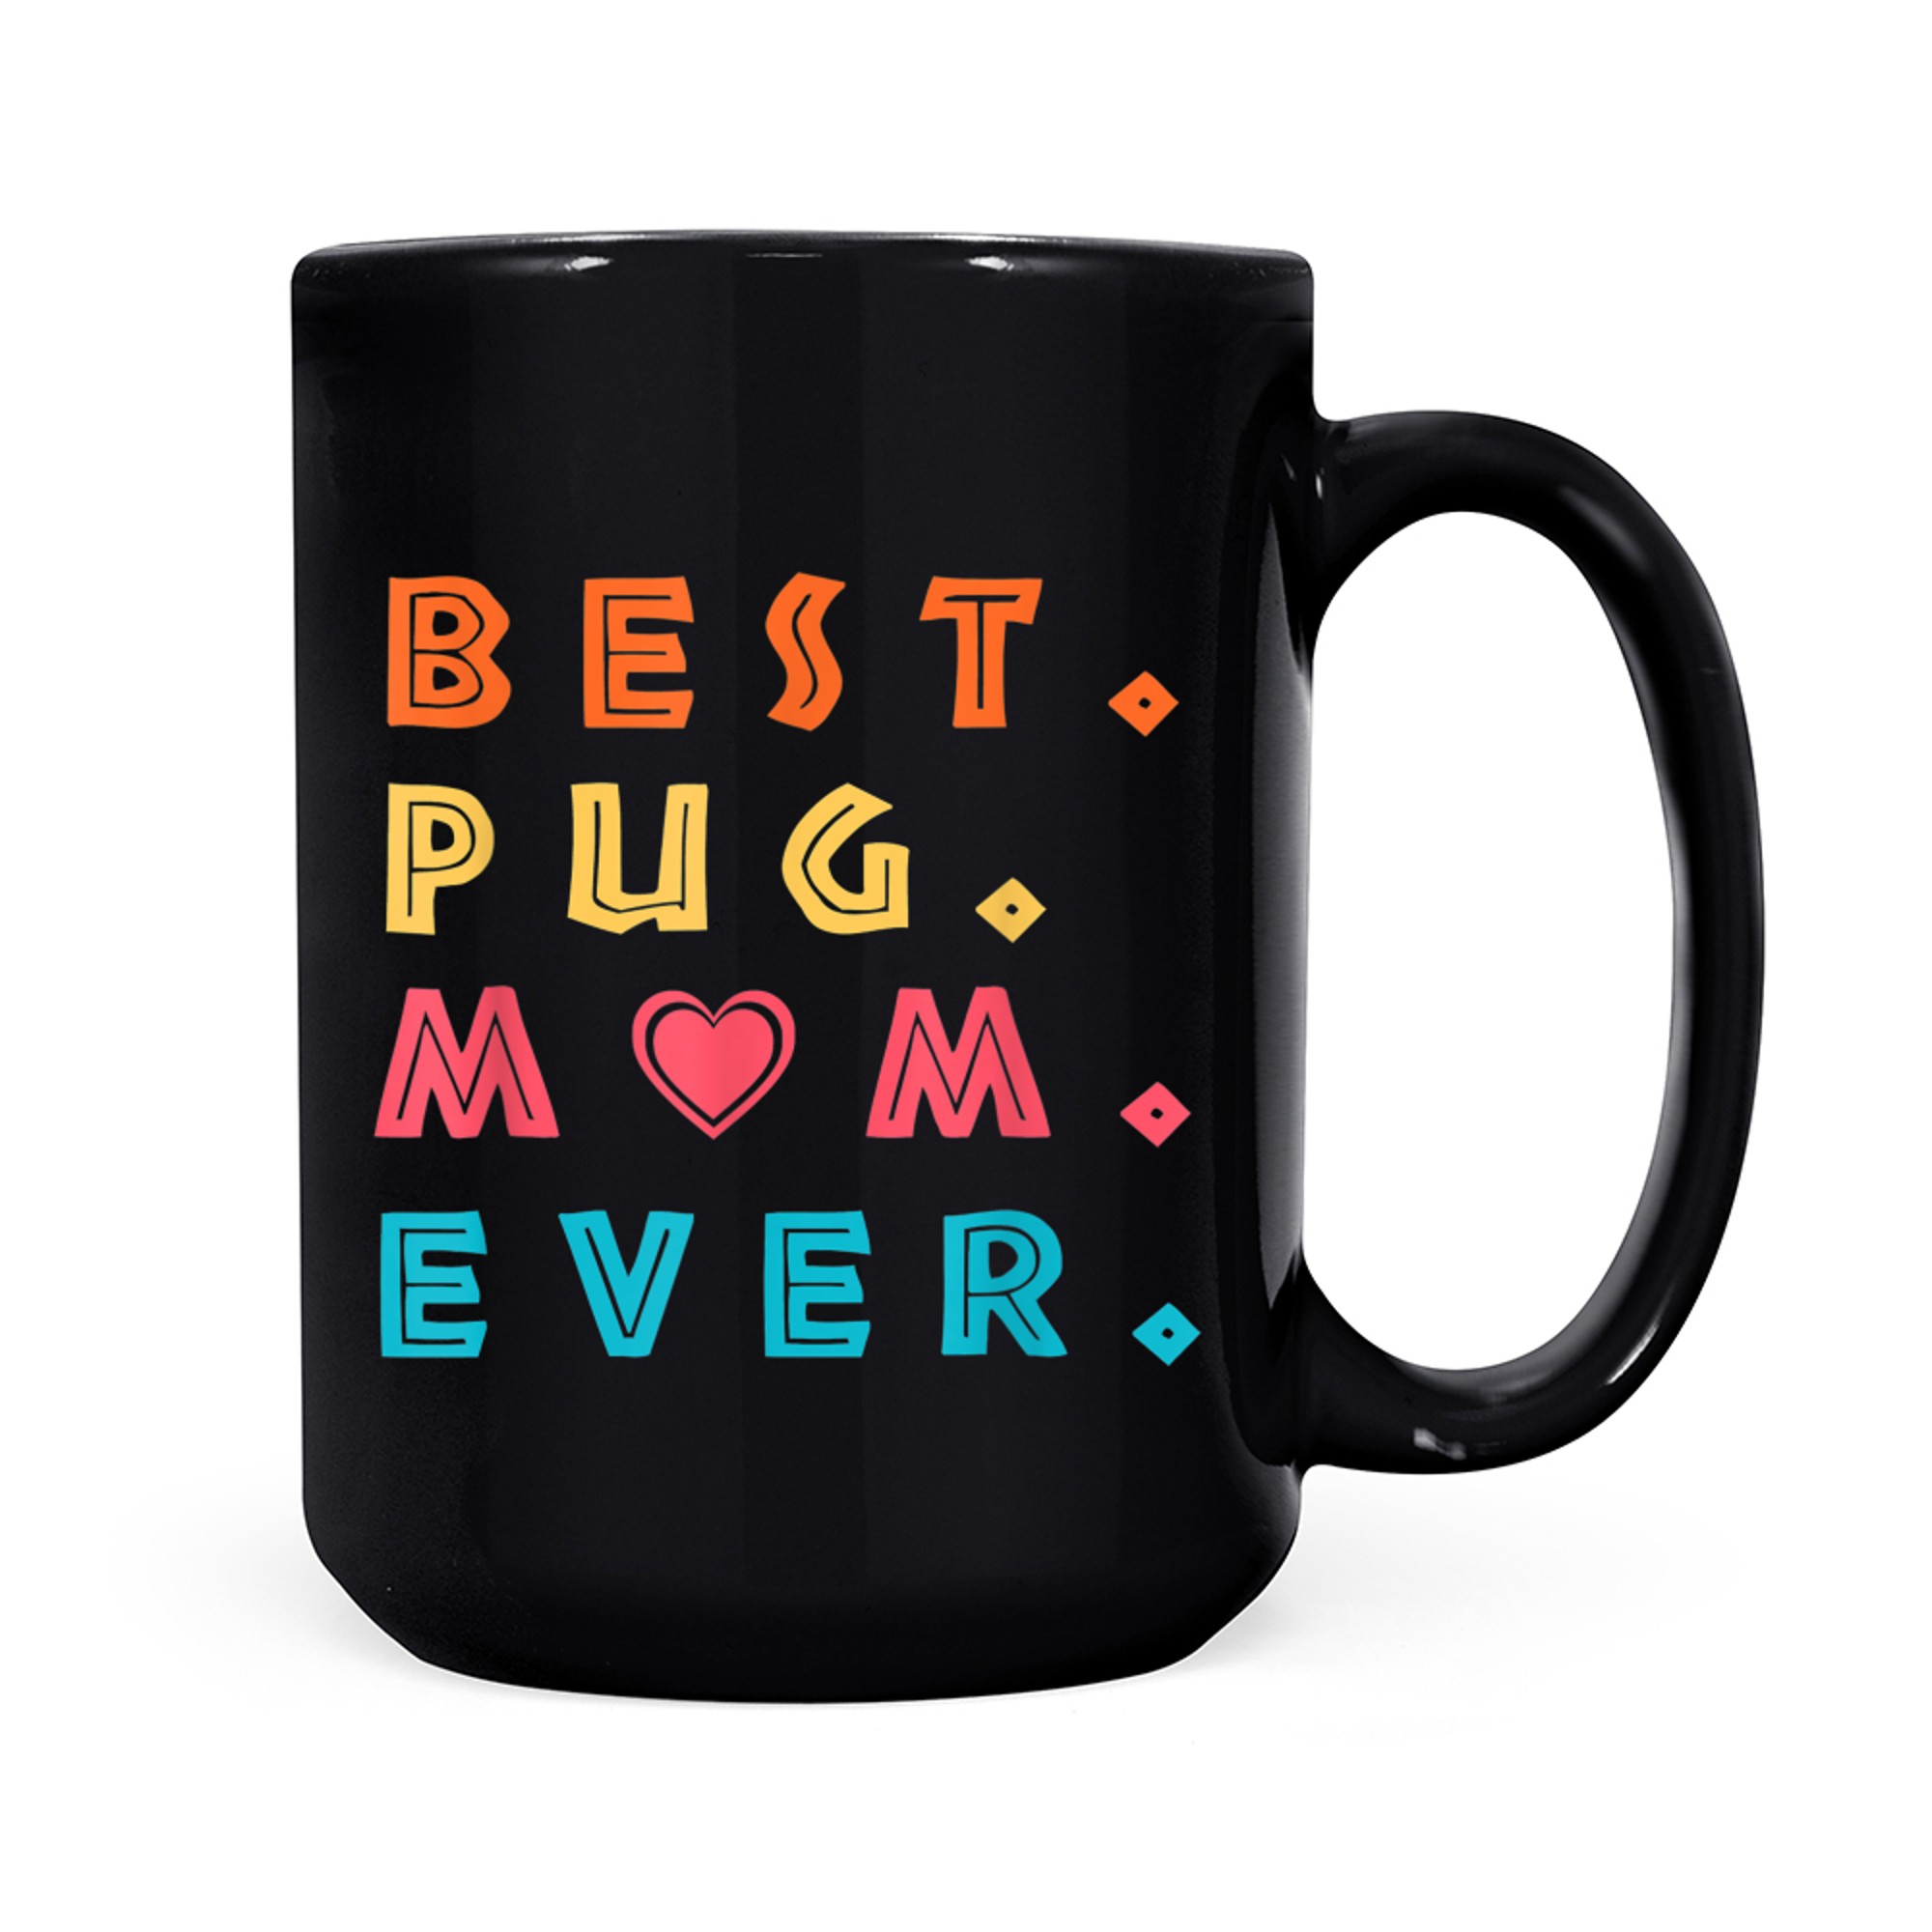 Best Pug Mom Ever Pug Dog Mama Cute Vintage_1 mug black